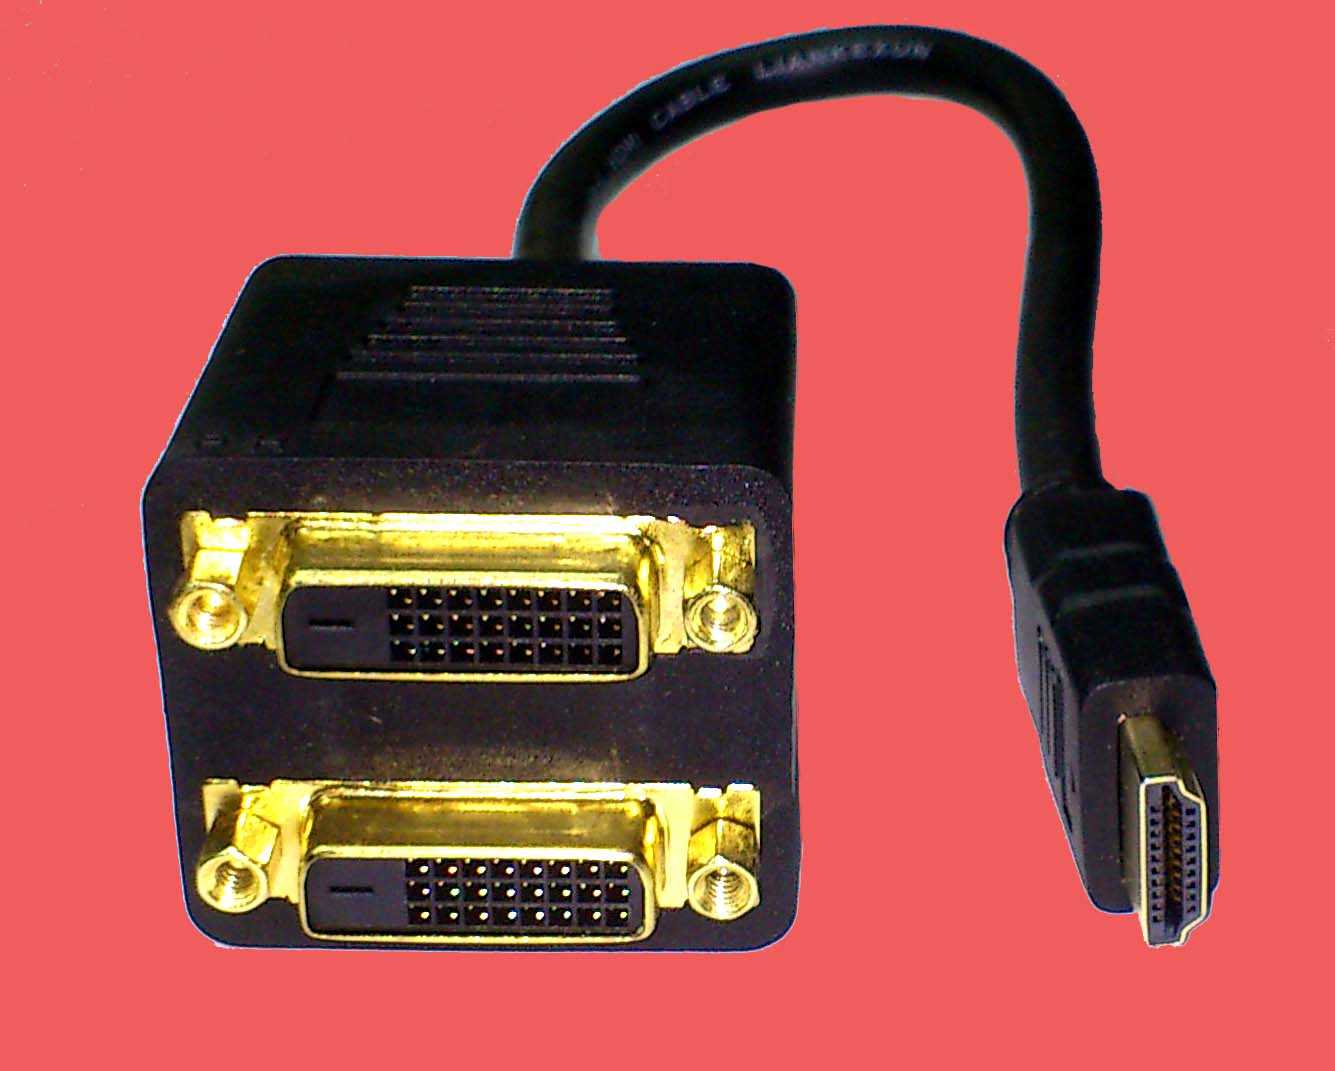 Инструкция по подключению ноутбука к телевизору через кабель hdmi и сеть wi-fi